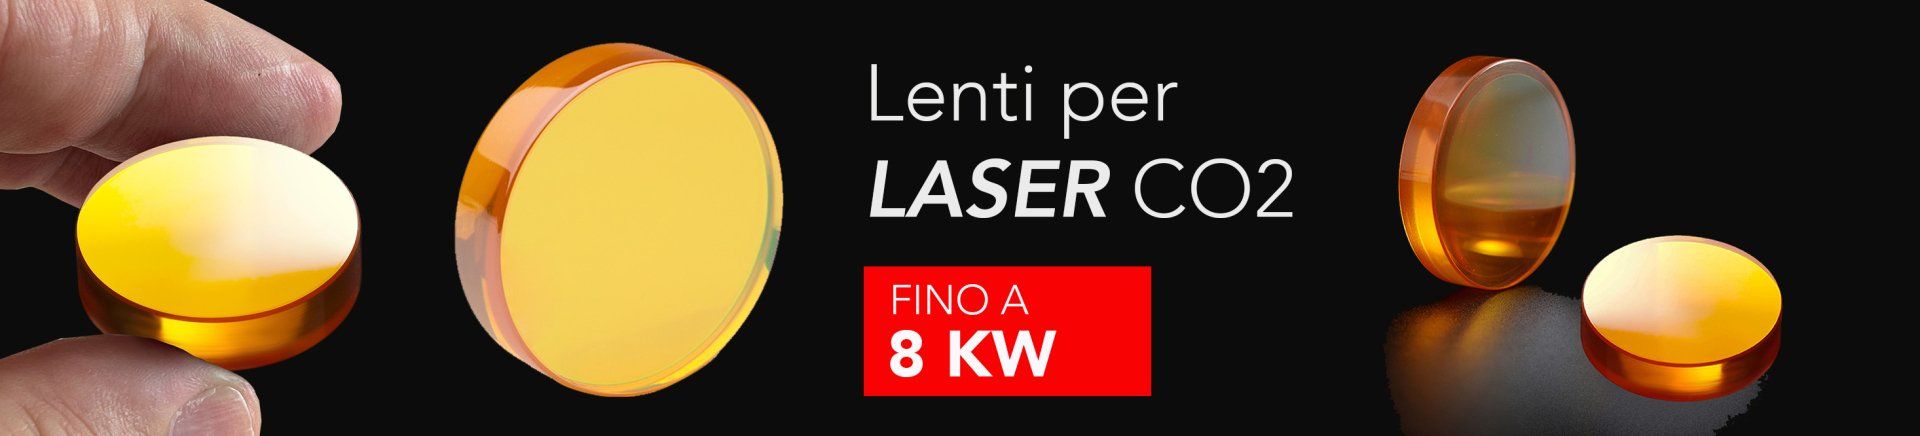 lenti per laser co2